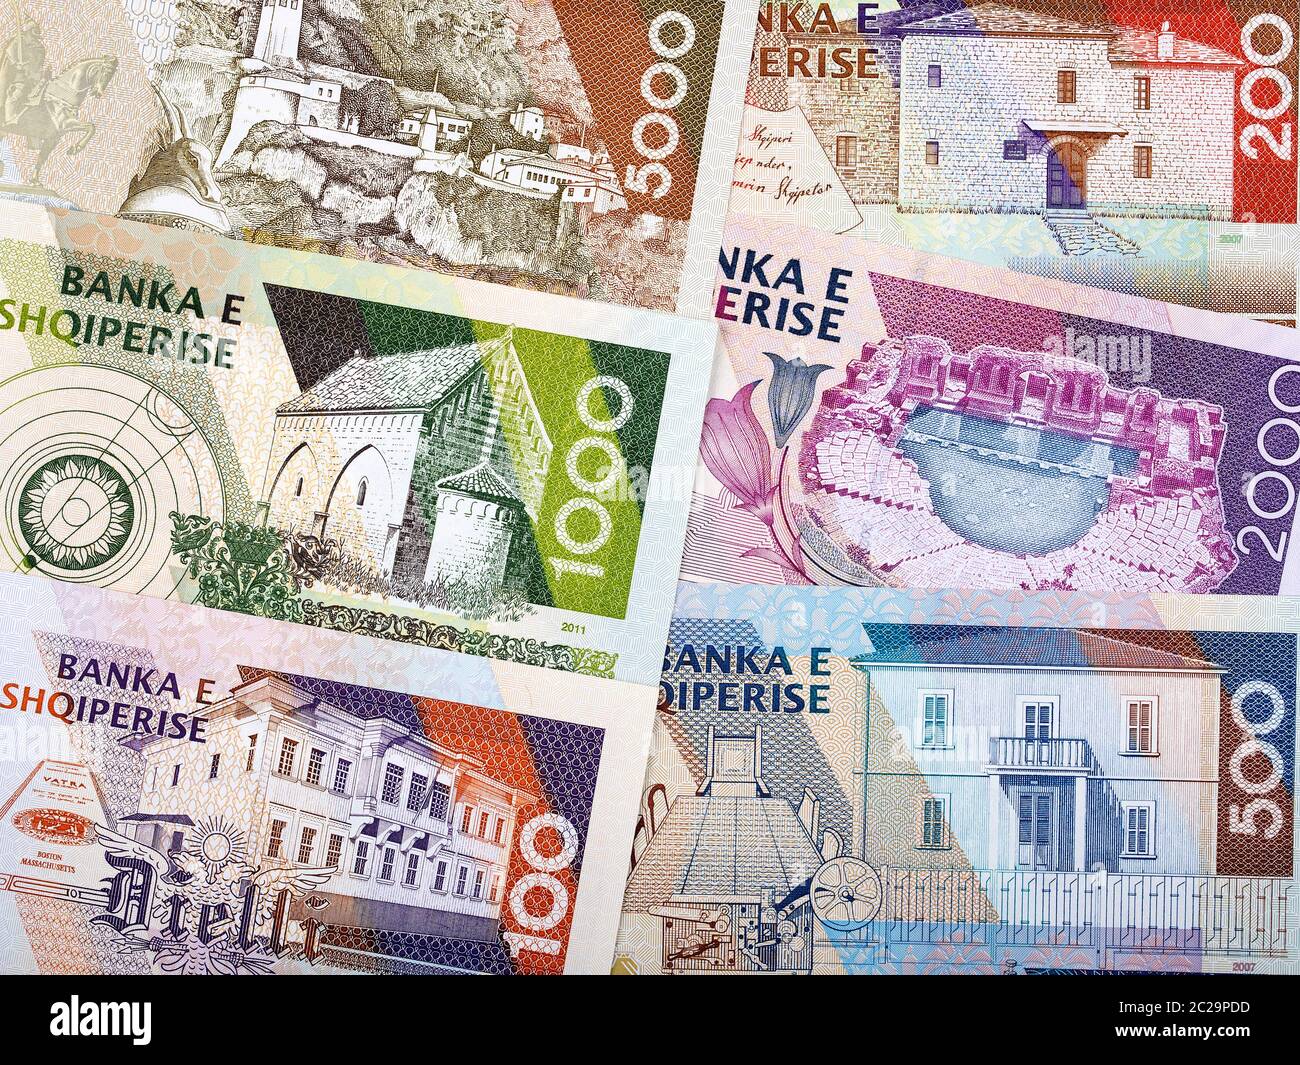 Banconote albanesi immagini e fotografie stock ad alta risoluzione - Alamy